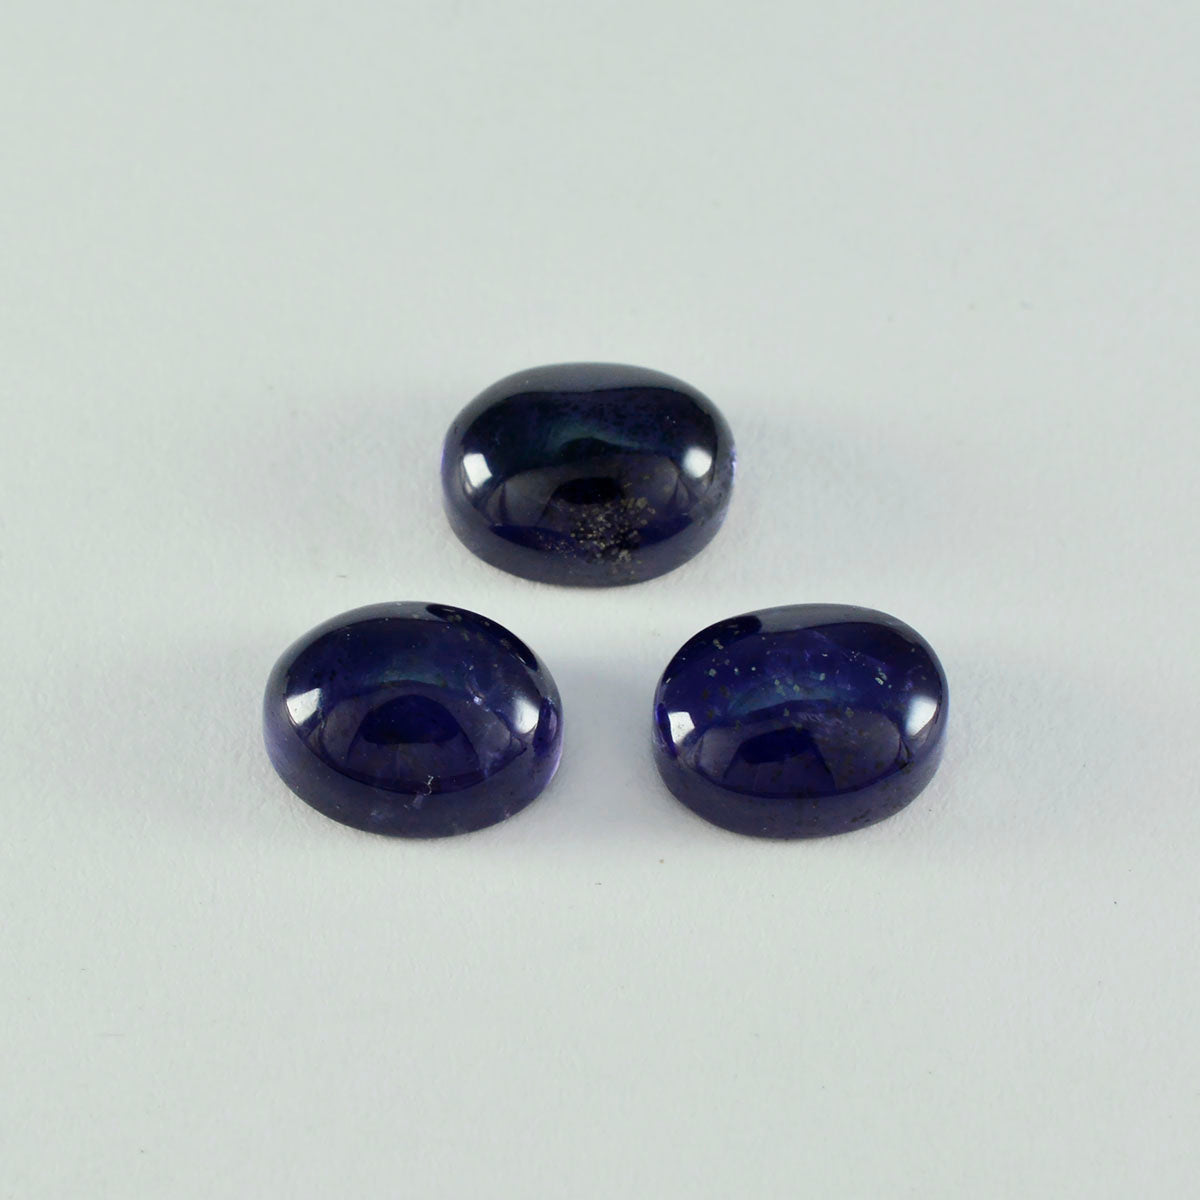 riyogems 1шт синий иолит кабошон 12x16 мм овальной формы драгоценный камень фантастического качества